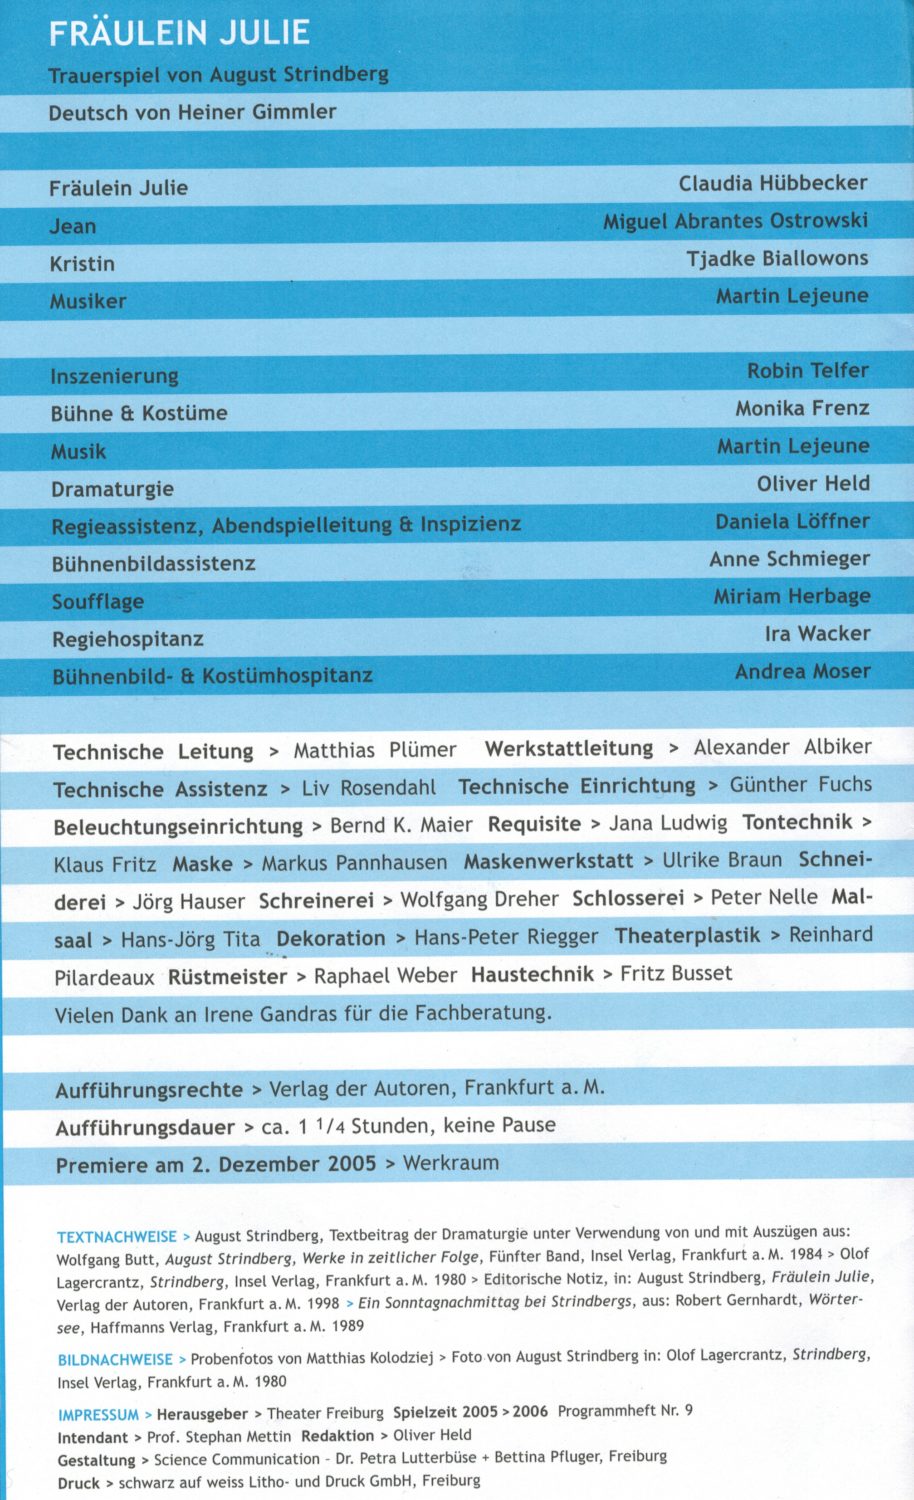 Fräulein Julie, Martin Lejeune, Bühnenmusik, Robin Telfer, Theater Freiburg